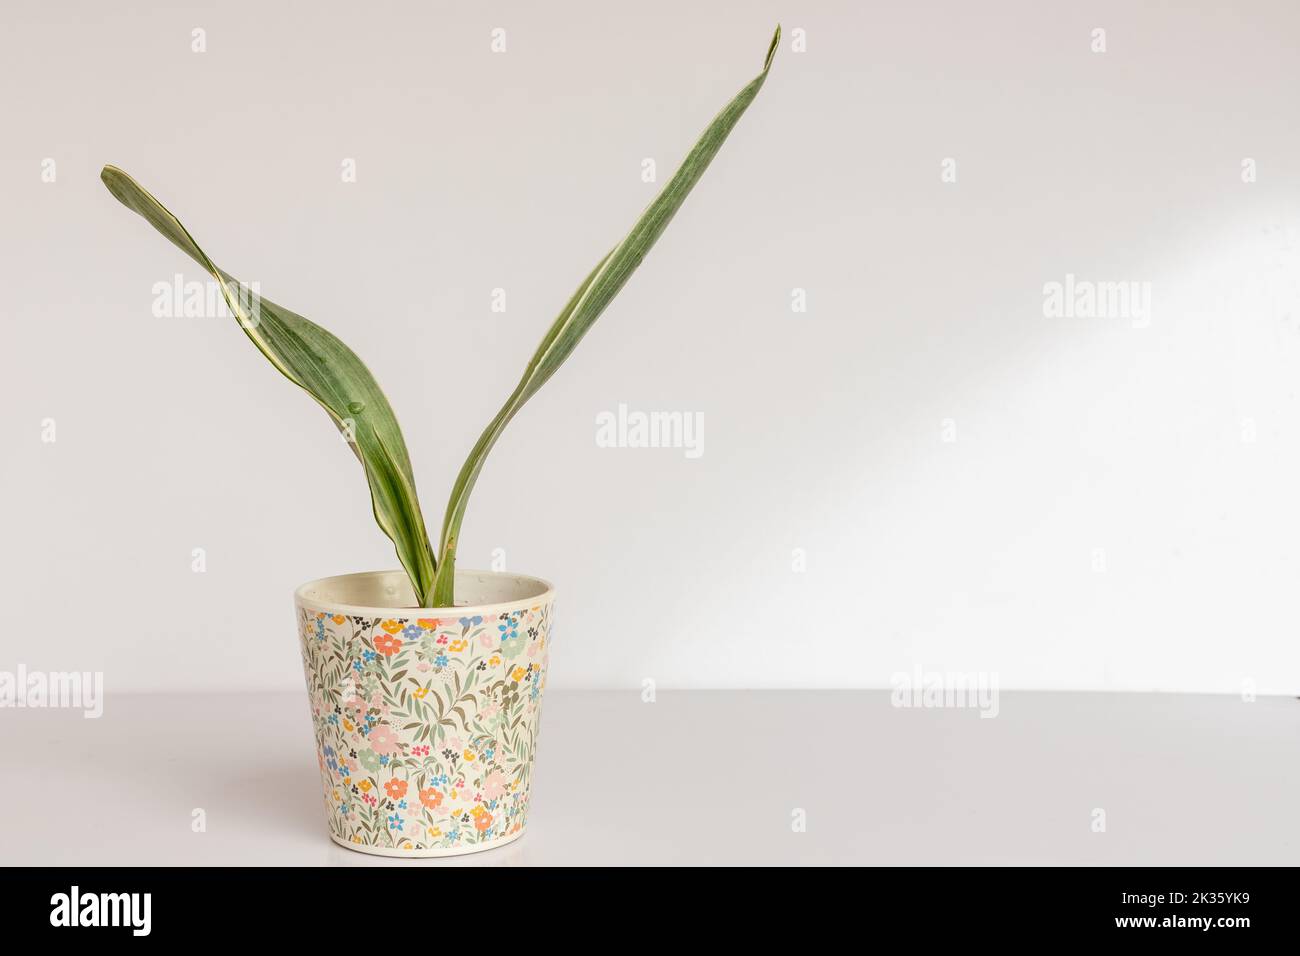 Sansevieria Trifasciata Bantels Sensation snake plant on isolated white background Stock Photo